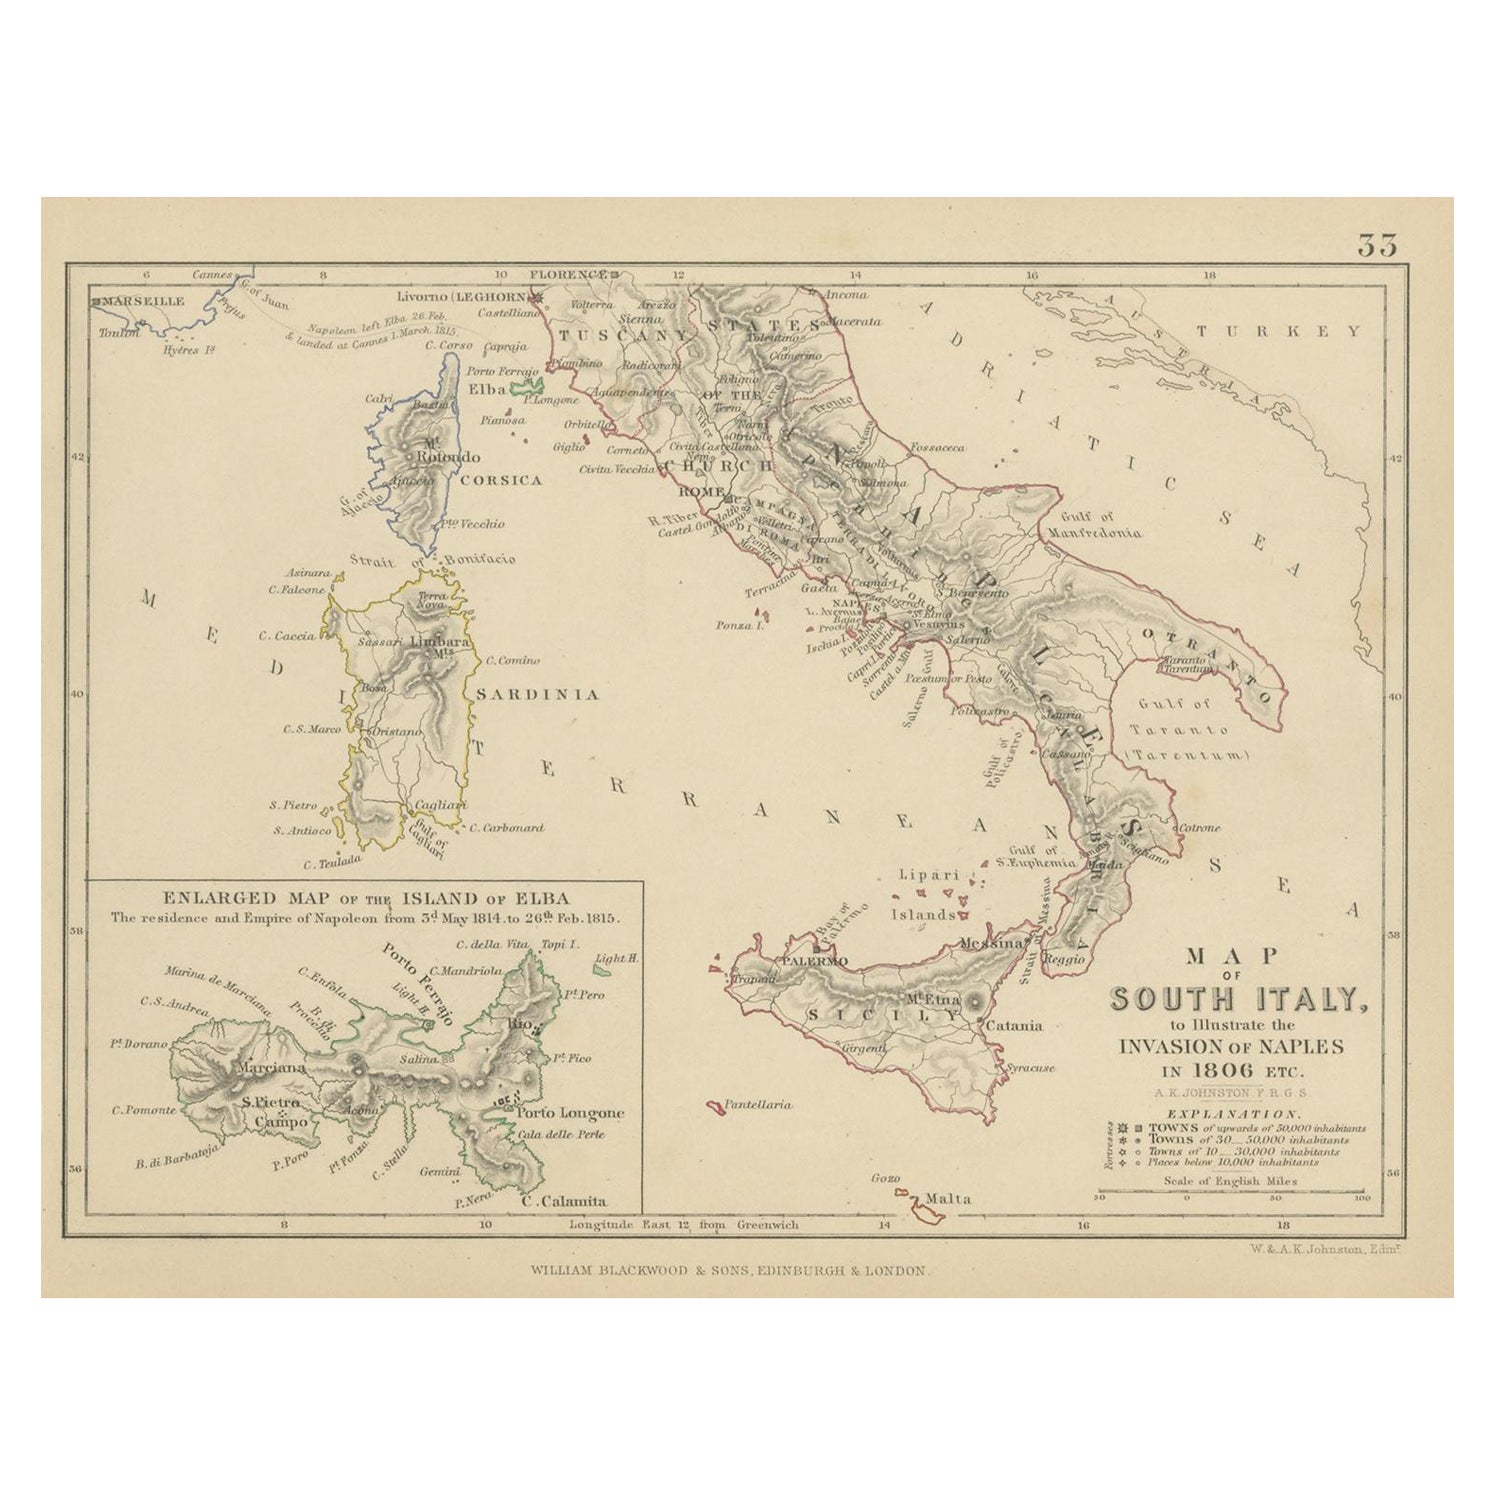 Antike Karte von Süditalien, die Invasion von Neapel im Jahr 1806 illustriert